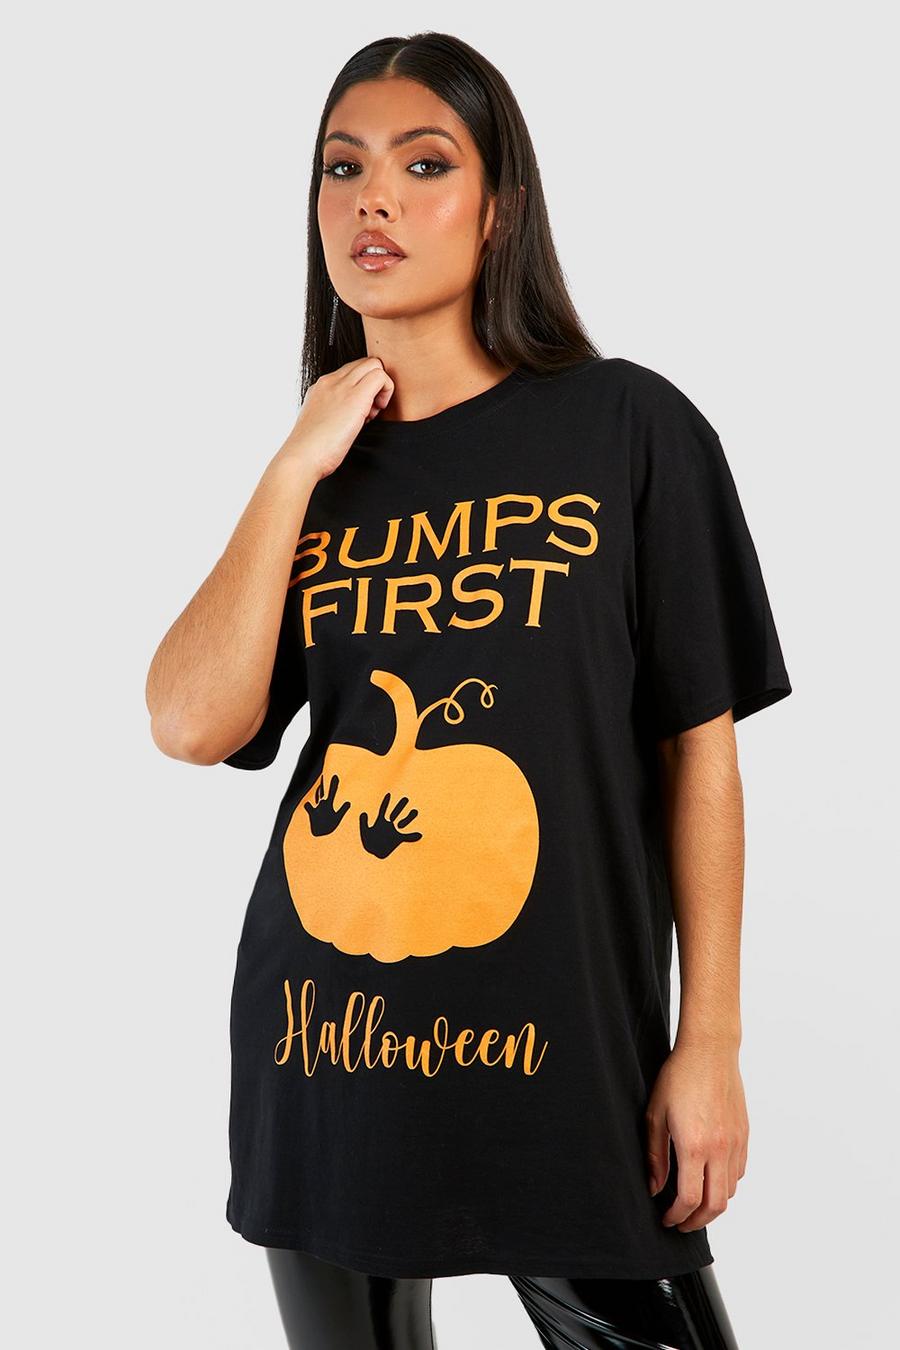 Black noir Maternity Bumps First Halloween Top